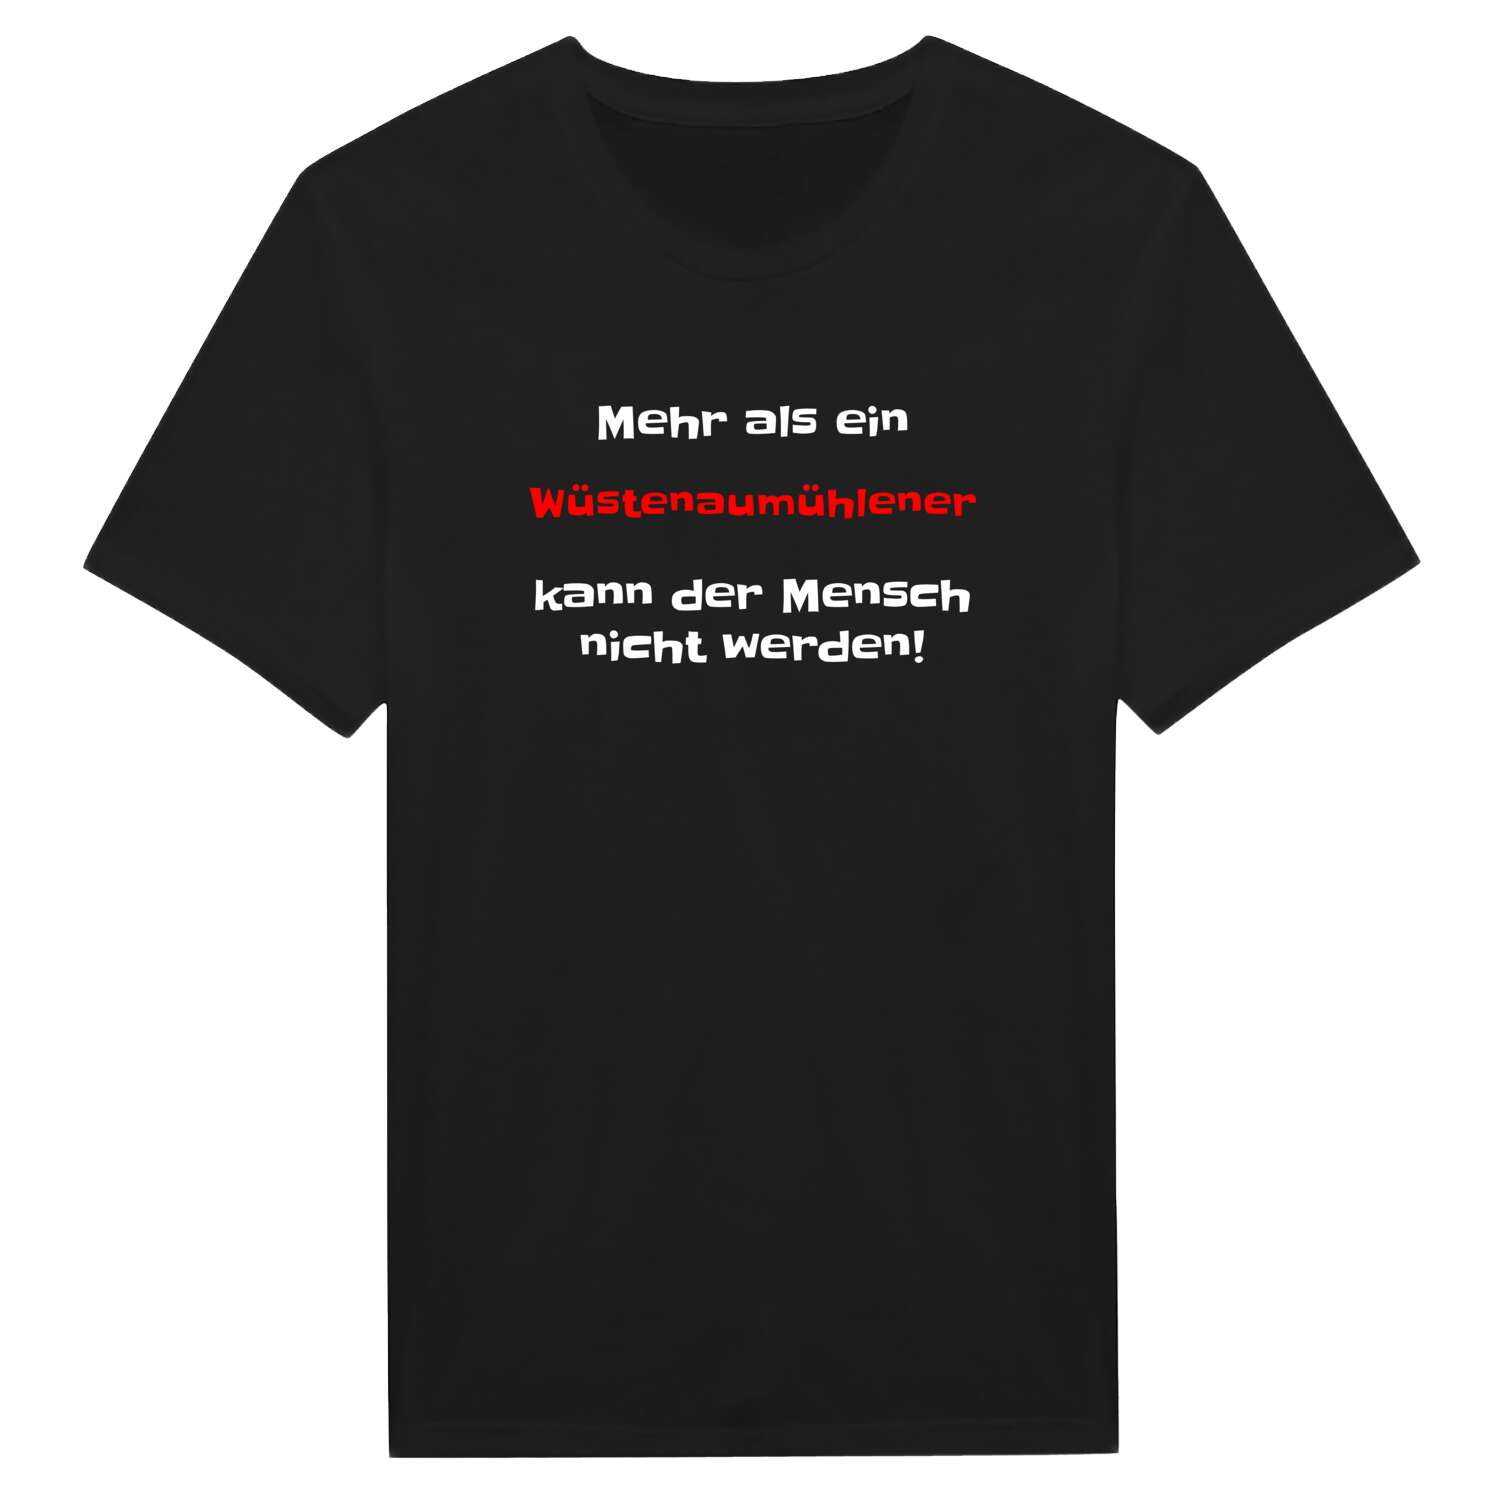 Wüstenaumühle T-Shirt »Mehr als ein«